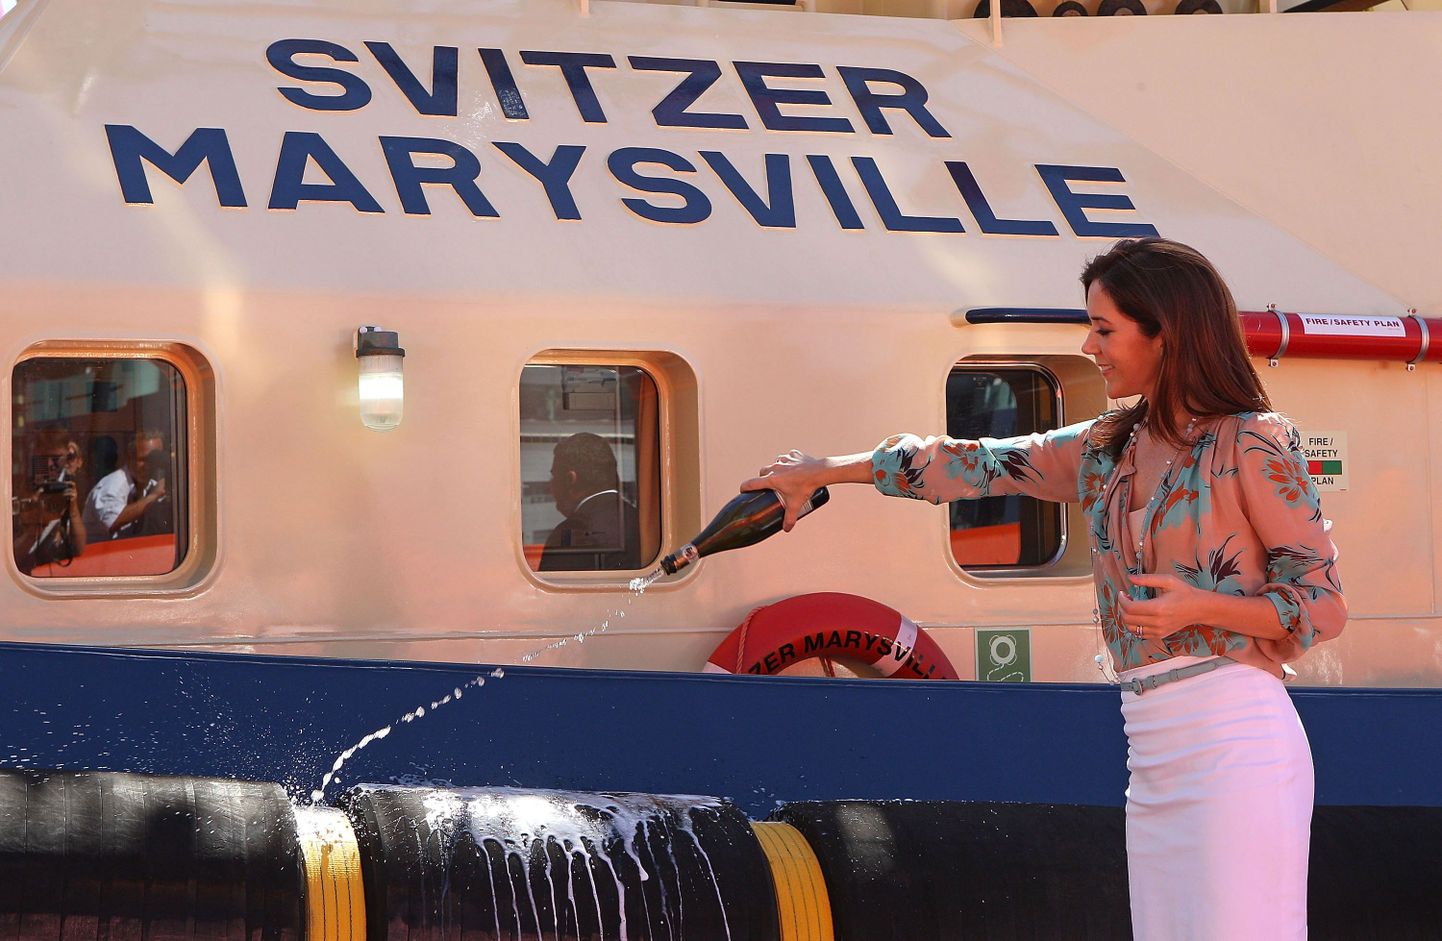 Taani kroonprintsess Mary puksiirlaeva Svitzer Marysville ristimas